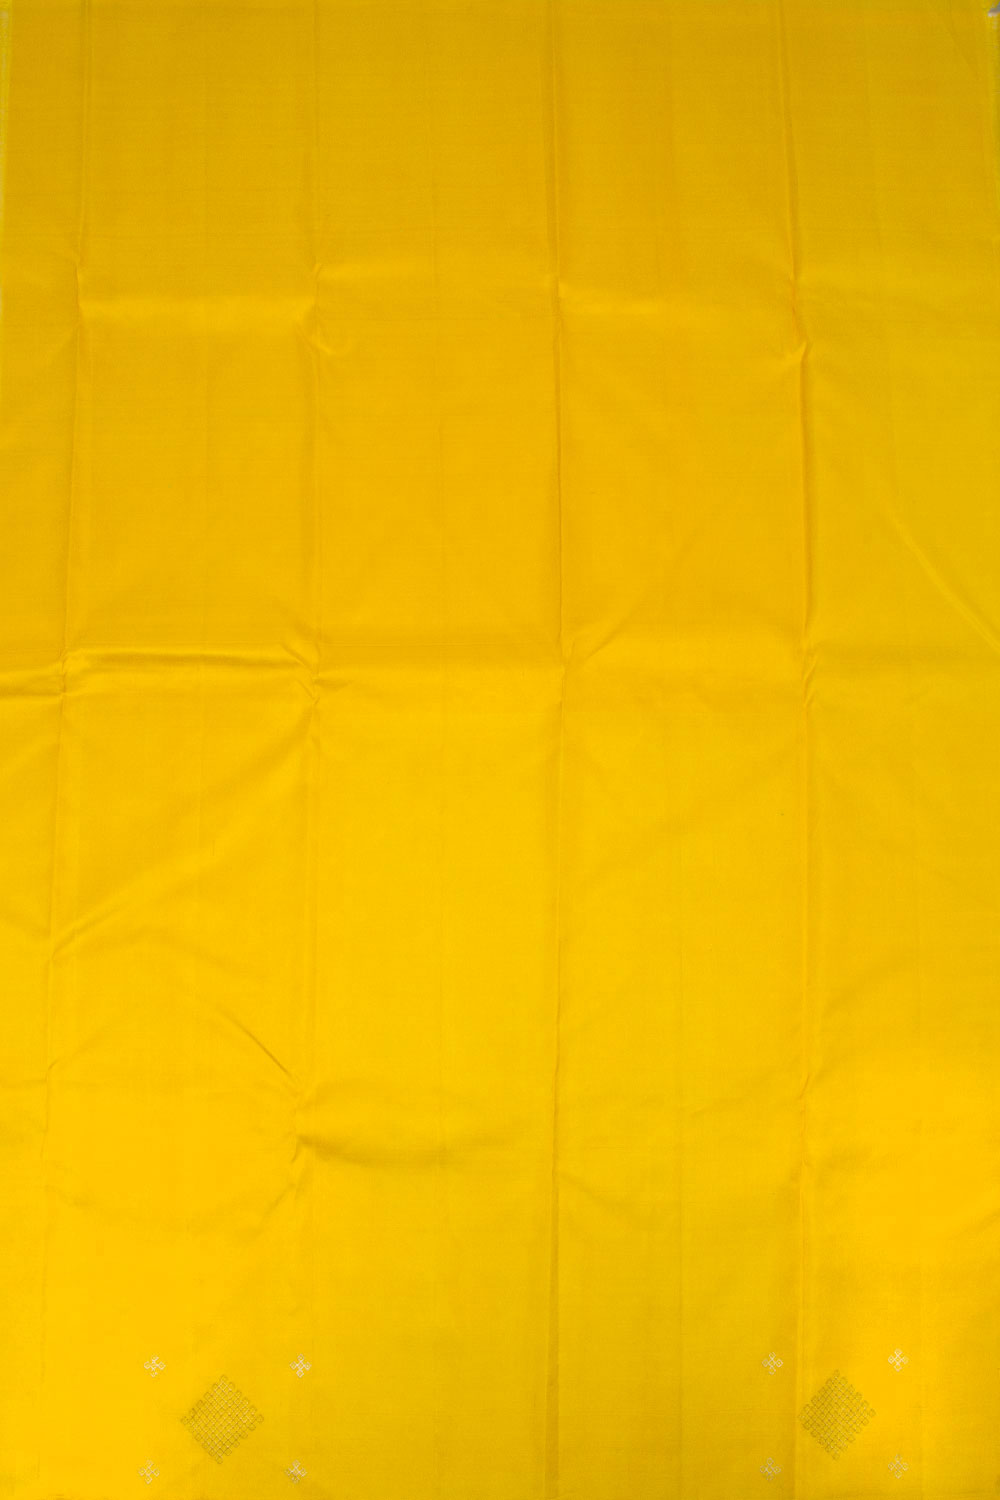 Yellow & Blue Pure Zari Korvai Kanjivaram Silk Saree 10063123